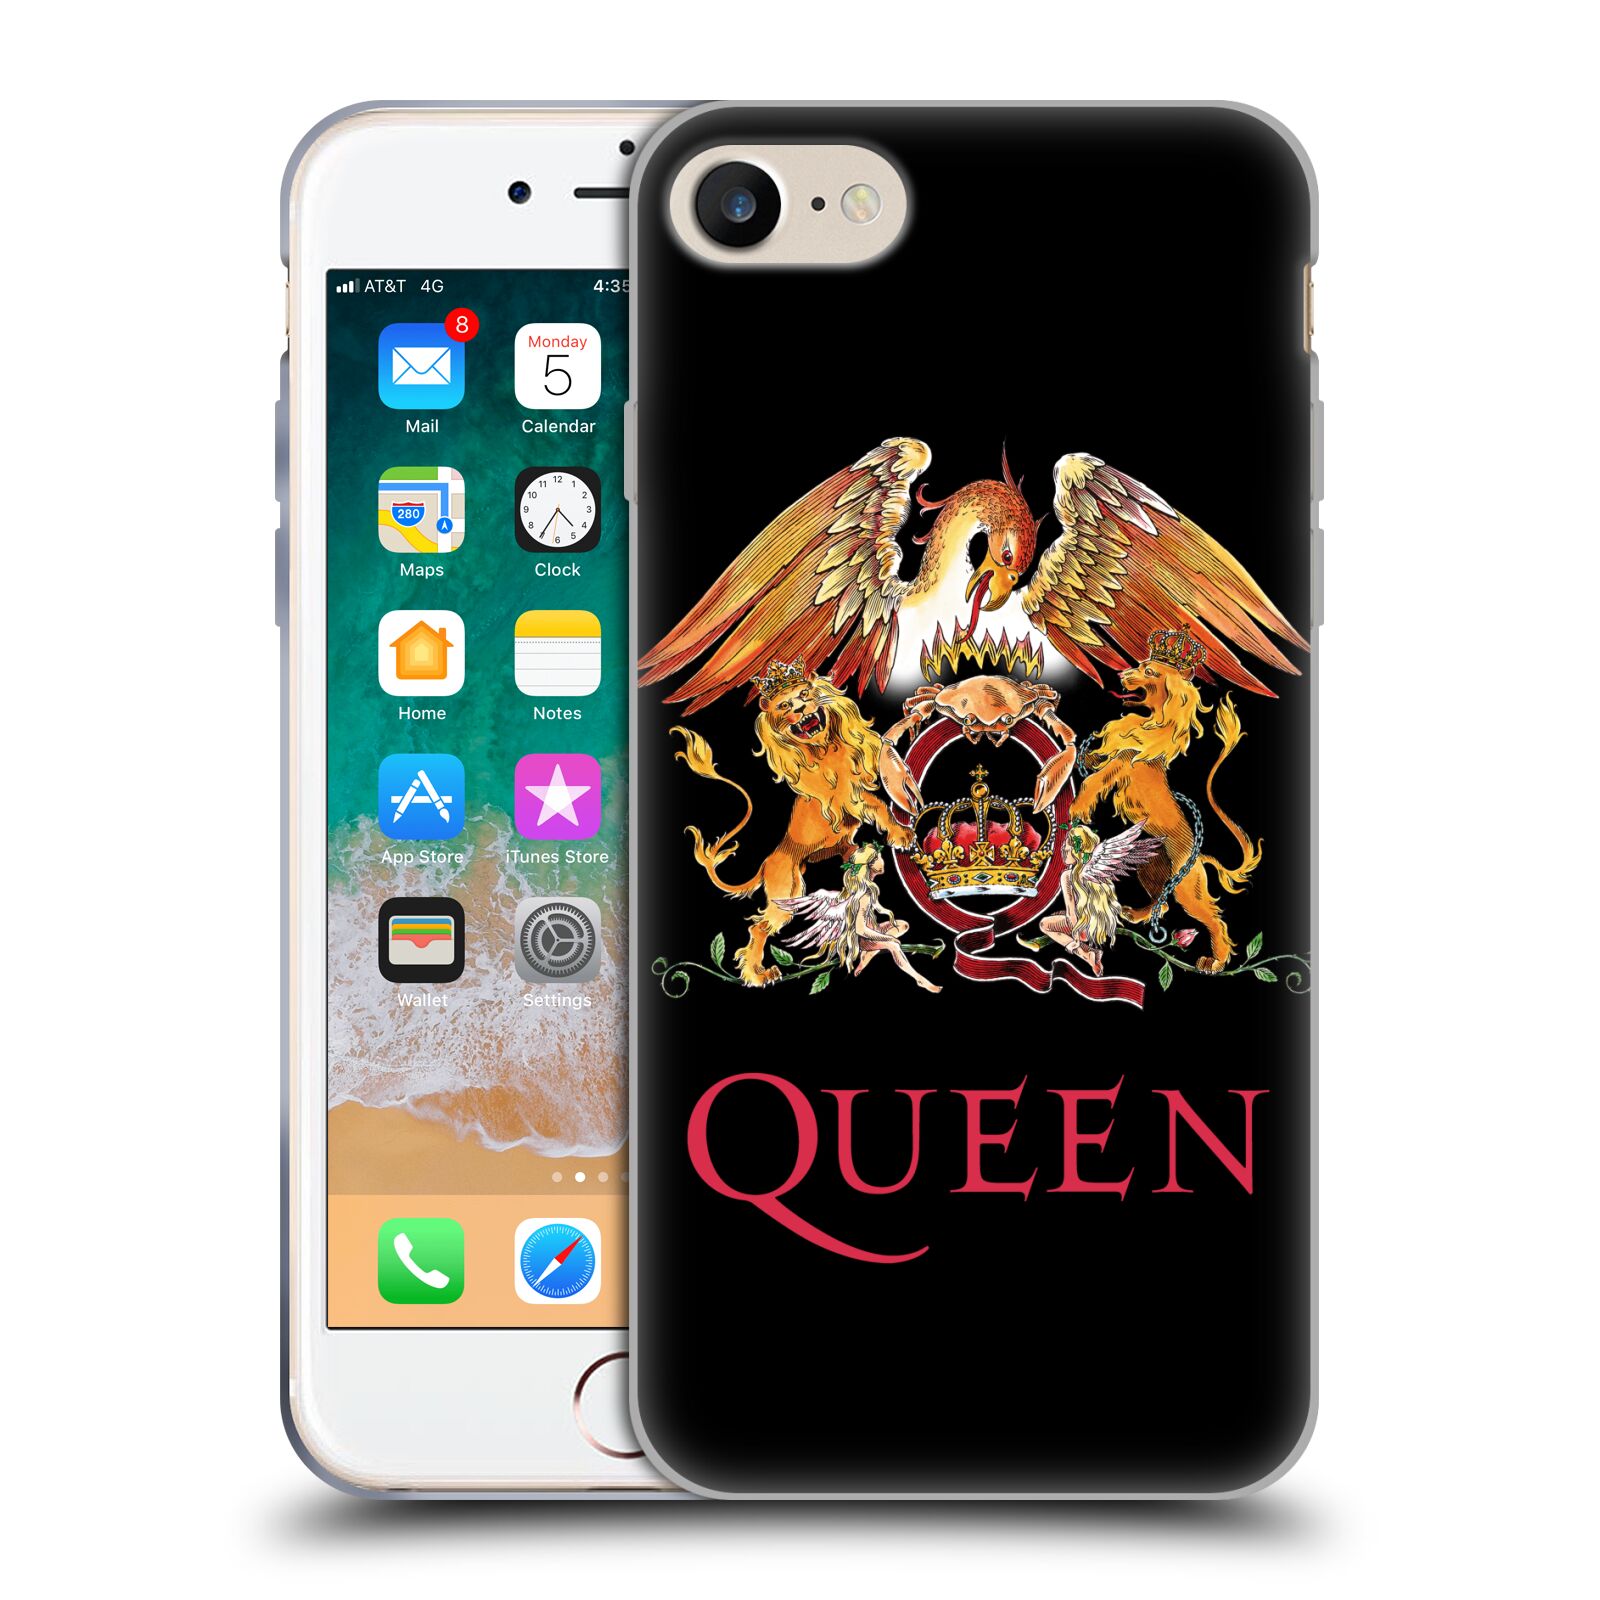 Silikonové pouzdro na mobil Apple iPhone 7 HEAD CASE Queen - Logo (Silikonový kryt či obal na mobilní telefon licencovaným motivem Queen pro Apple iPhone 7)